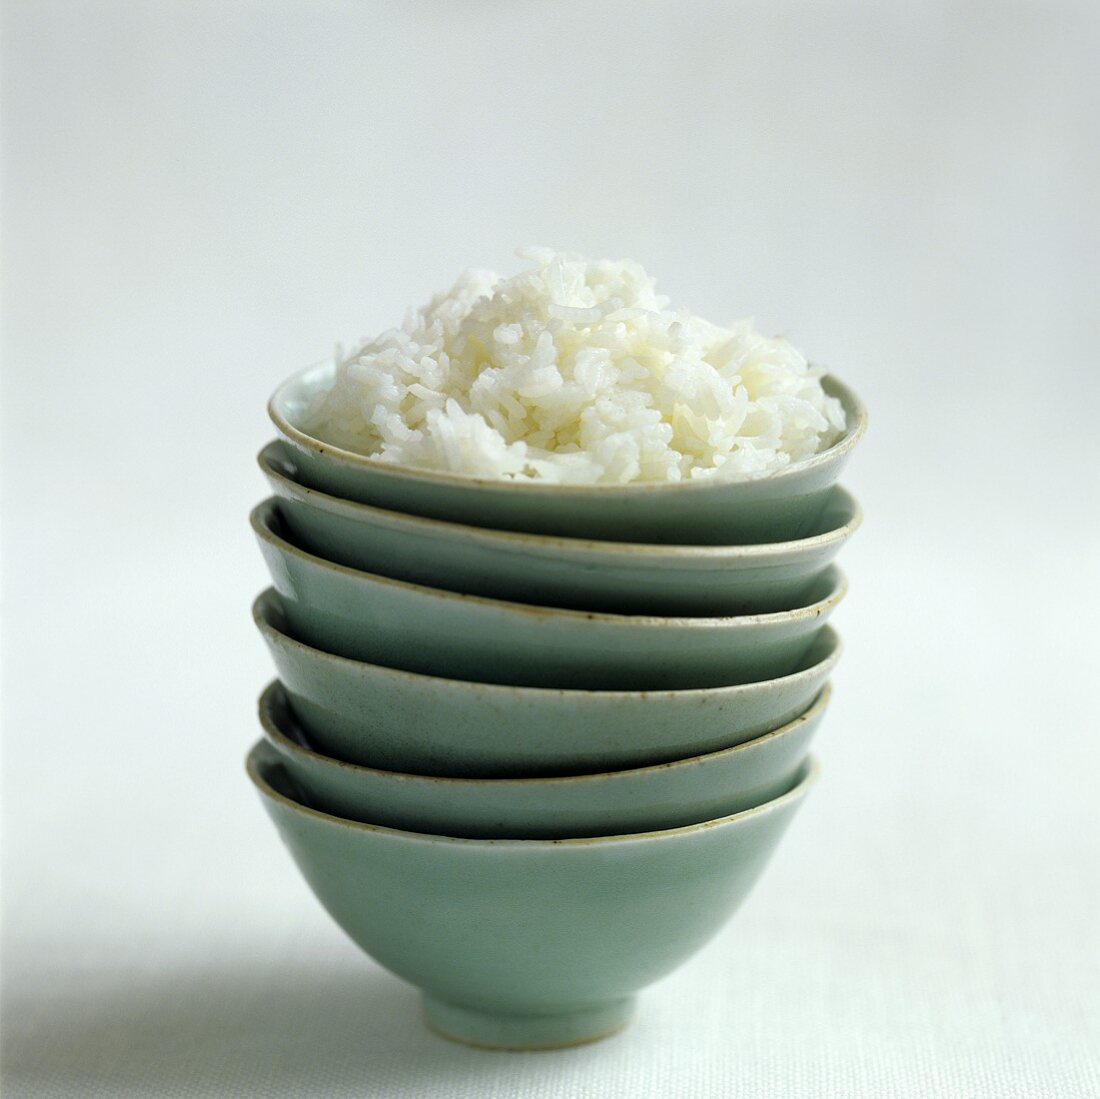 Gestapelte Schalen mit Reis